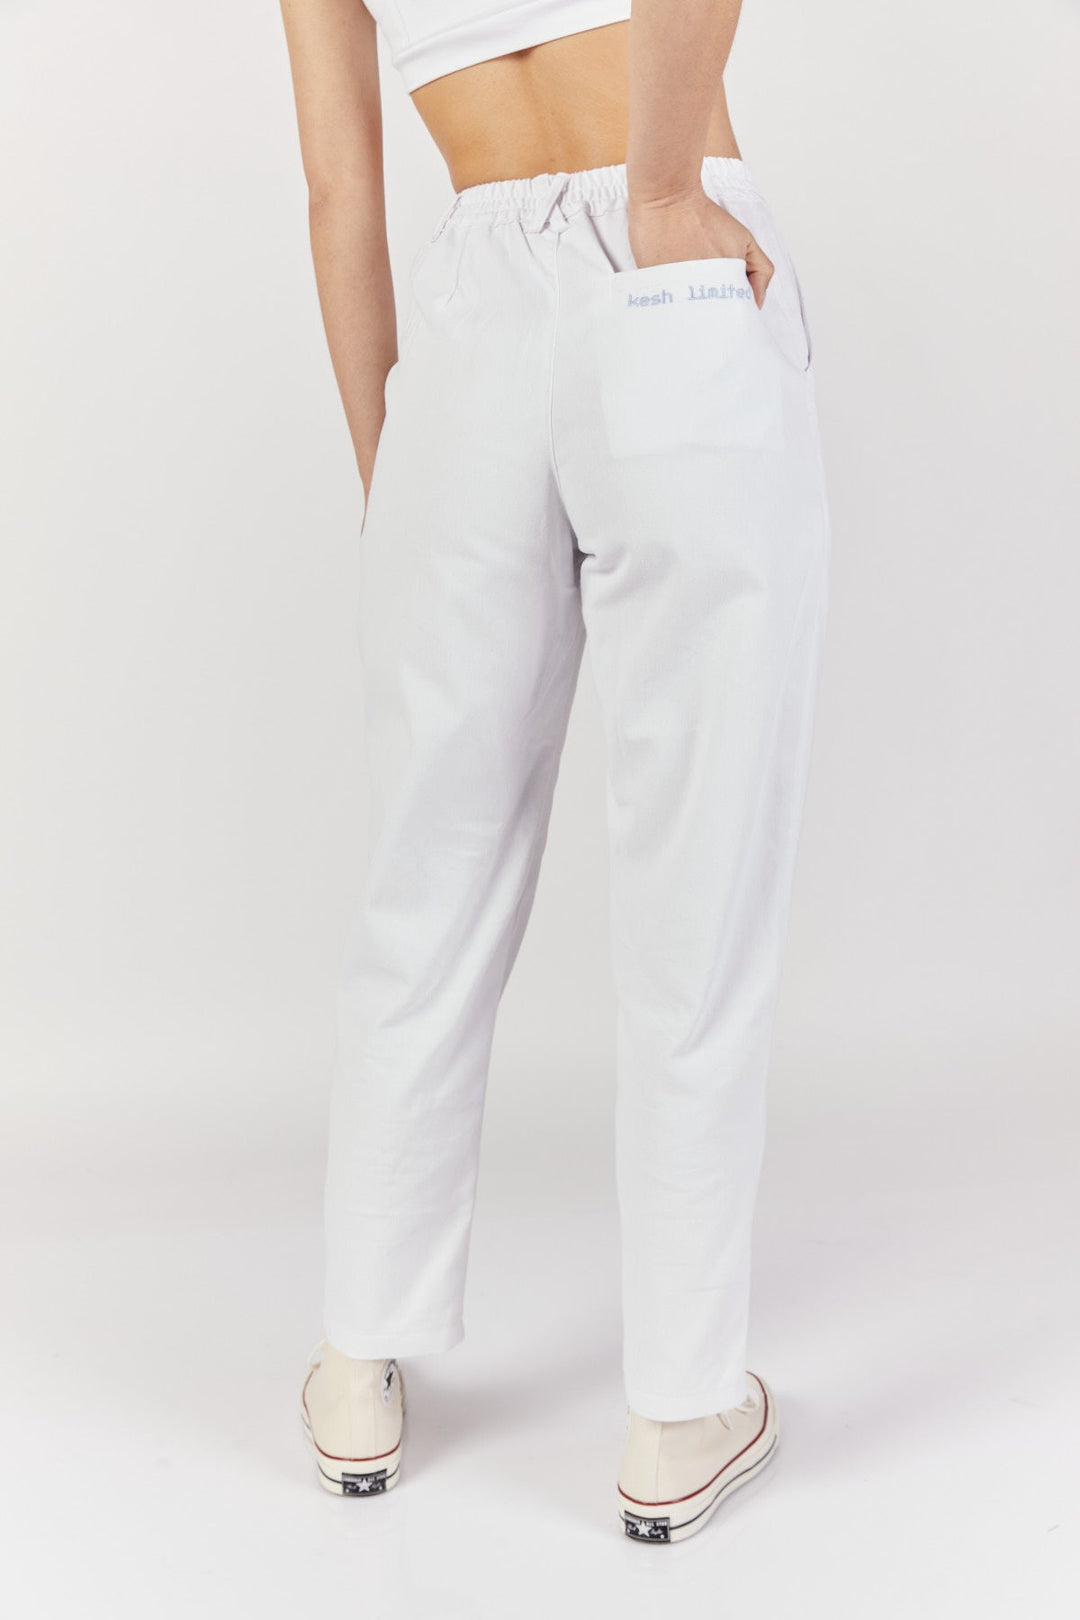 מכנסיים גבוהים פיקסל לוגו בצבע לבן - Kesh Limited